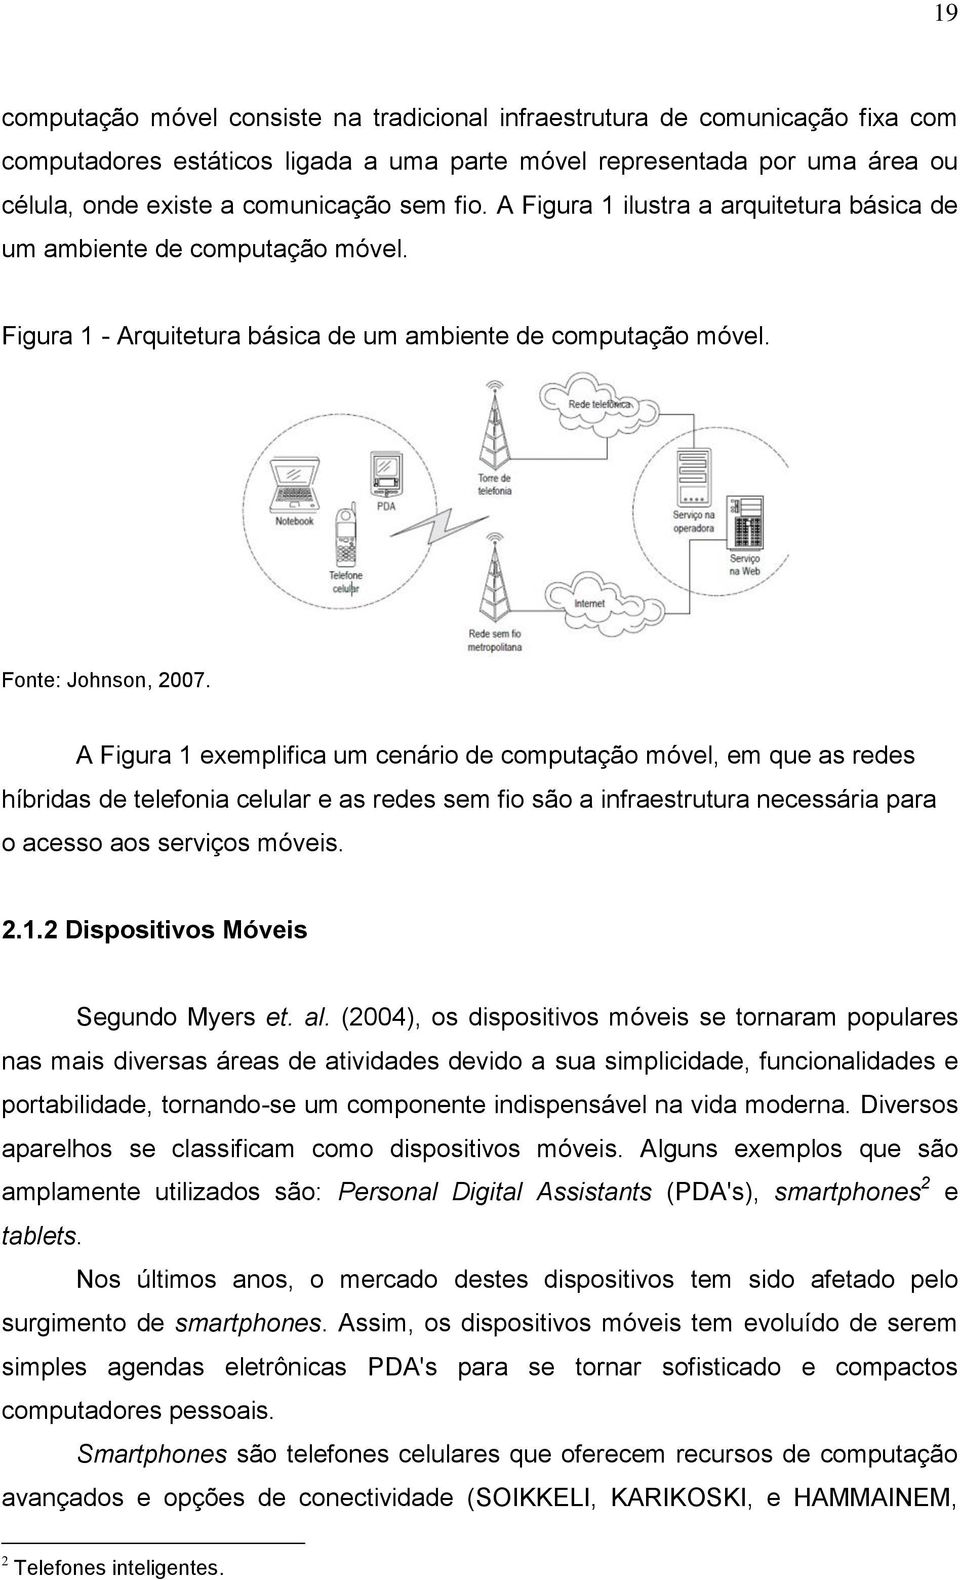 A Figura 1 exemplifica um cenário de computação móvel, em que as redes híbridas de telefonia celular e as redes sem fio são a infraestrutura necessária para o acesso aos serviços móveis. 2.1.2 Dispositivos Móveis Segundo Myers et.